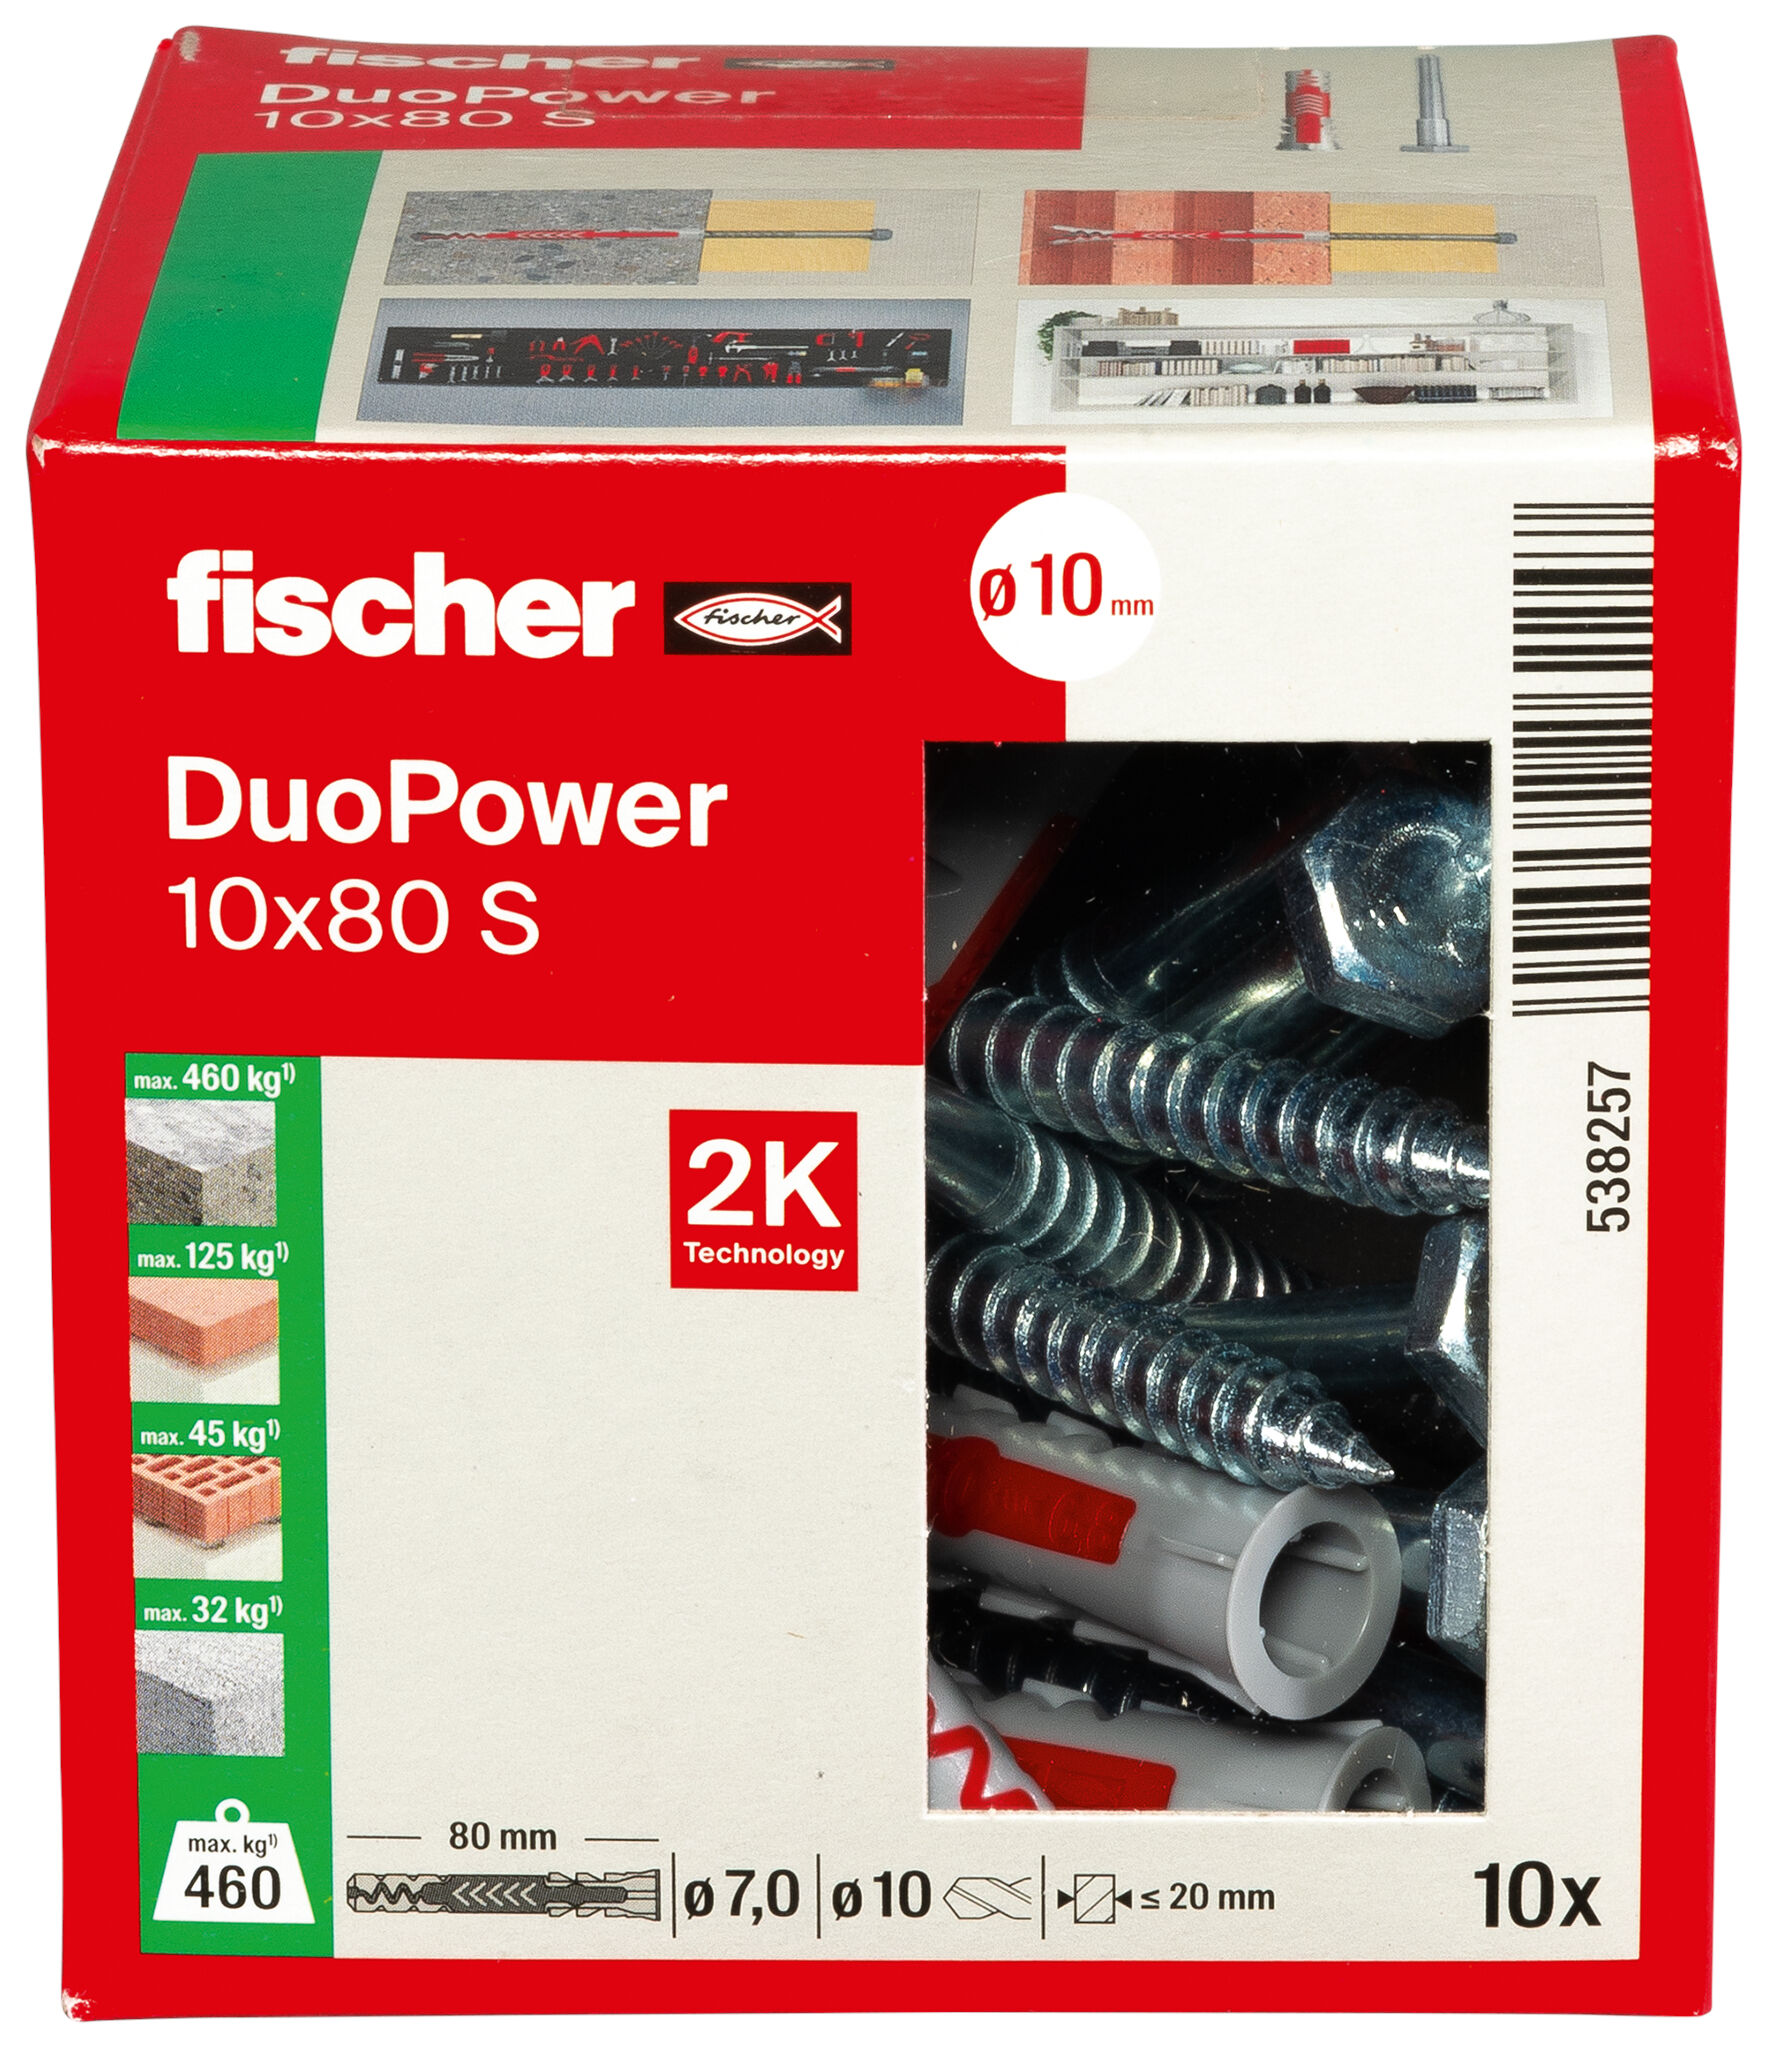 fischer DuoPower 10 x 80 S